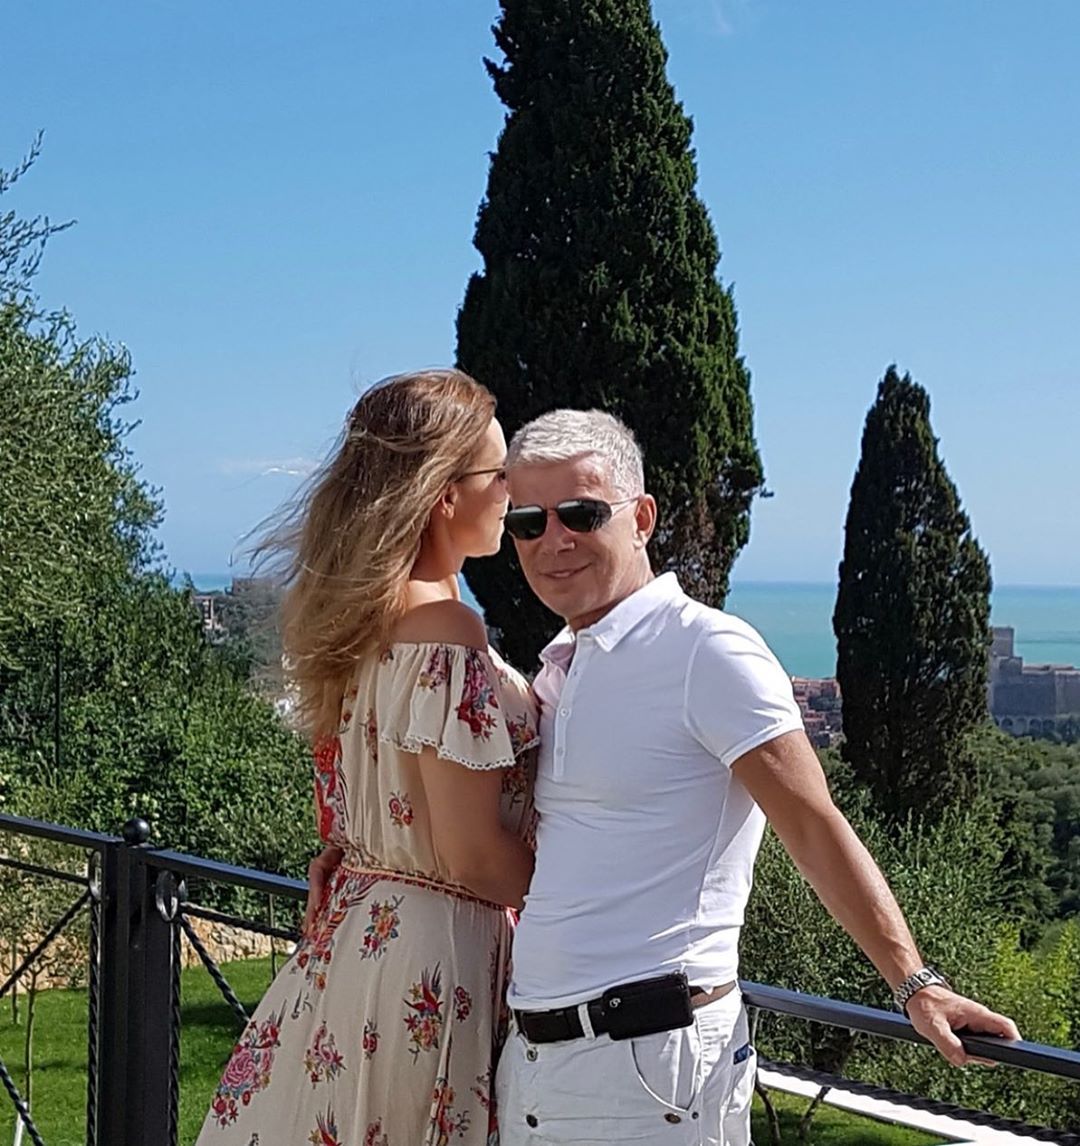 Олег Газманов с женой на отдыхе. Фото: официальная страница Олега Газманова в инстаграме*